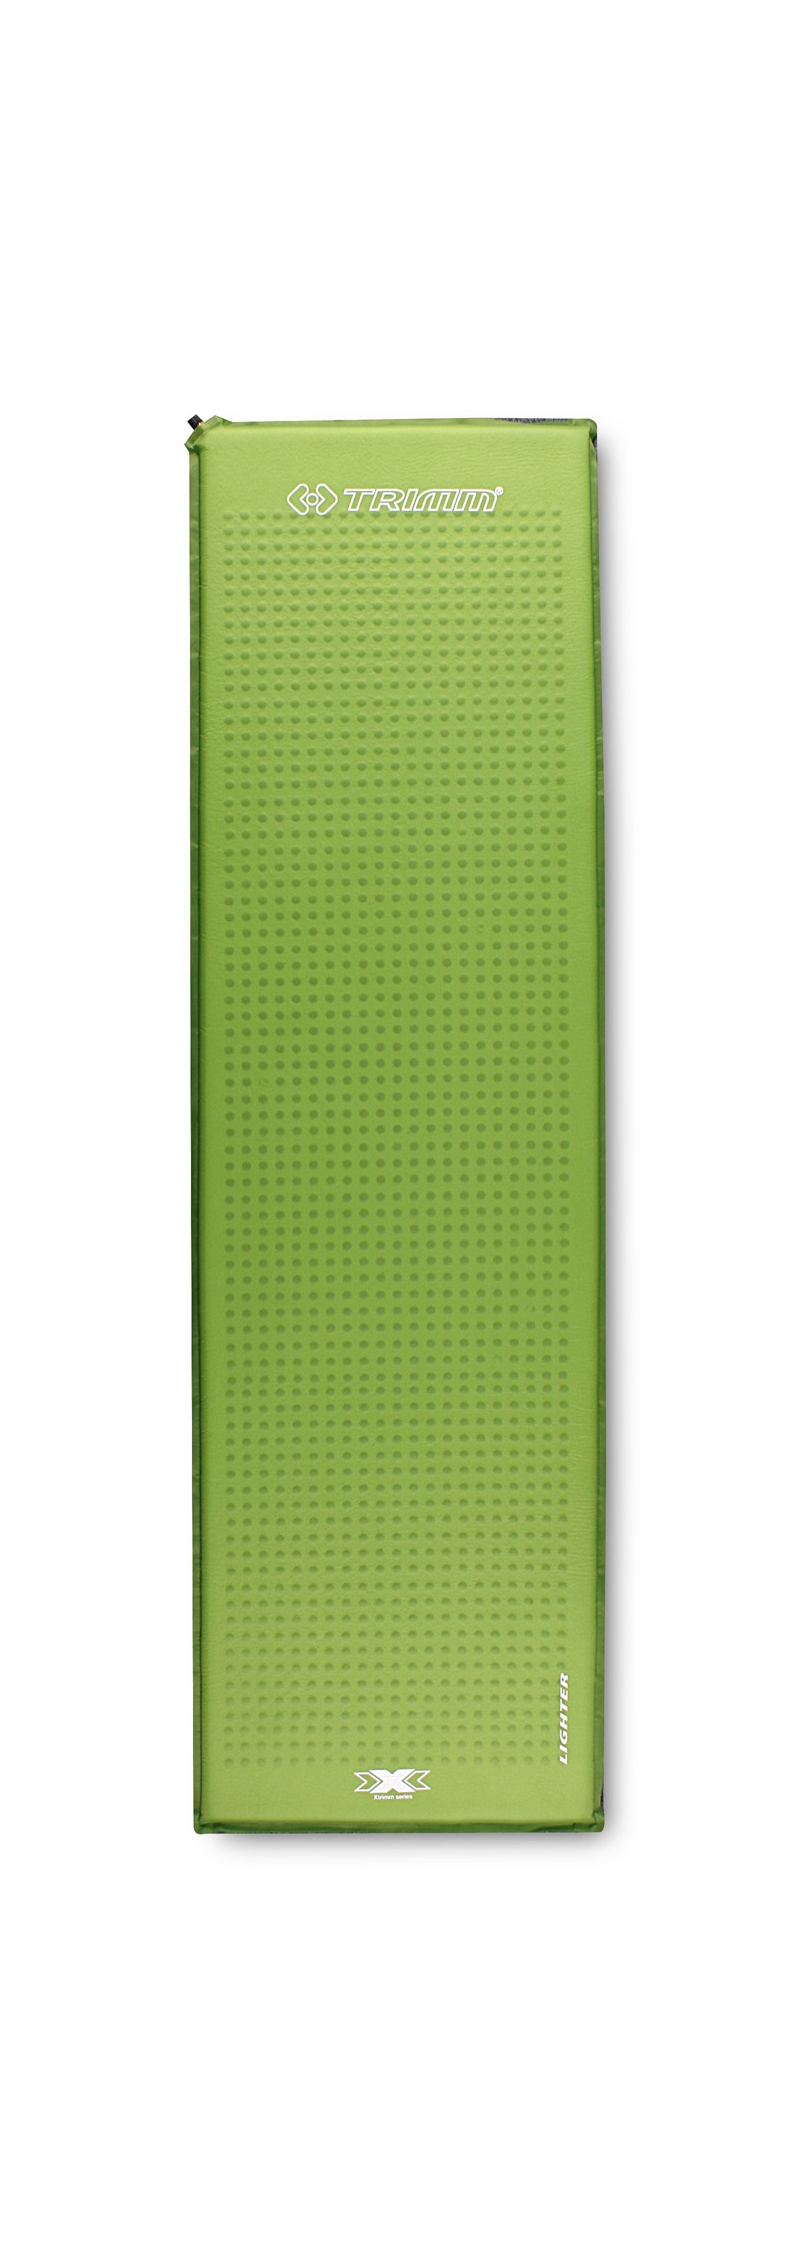 Самонадувающийся коврик Trimm Lighter 30 (Зеленый)